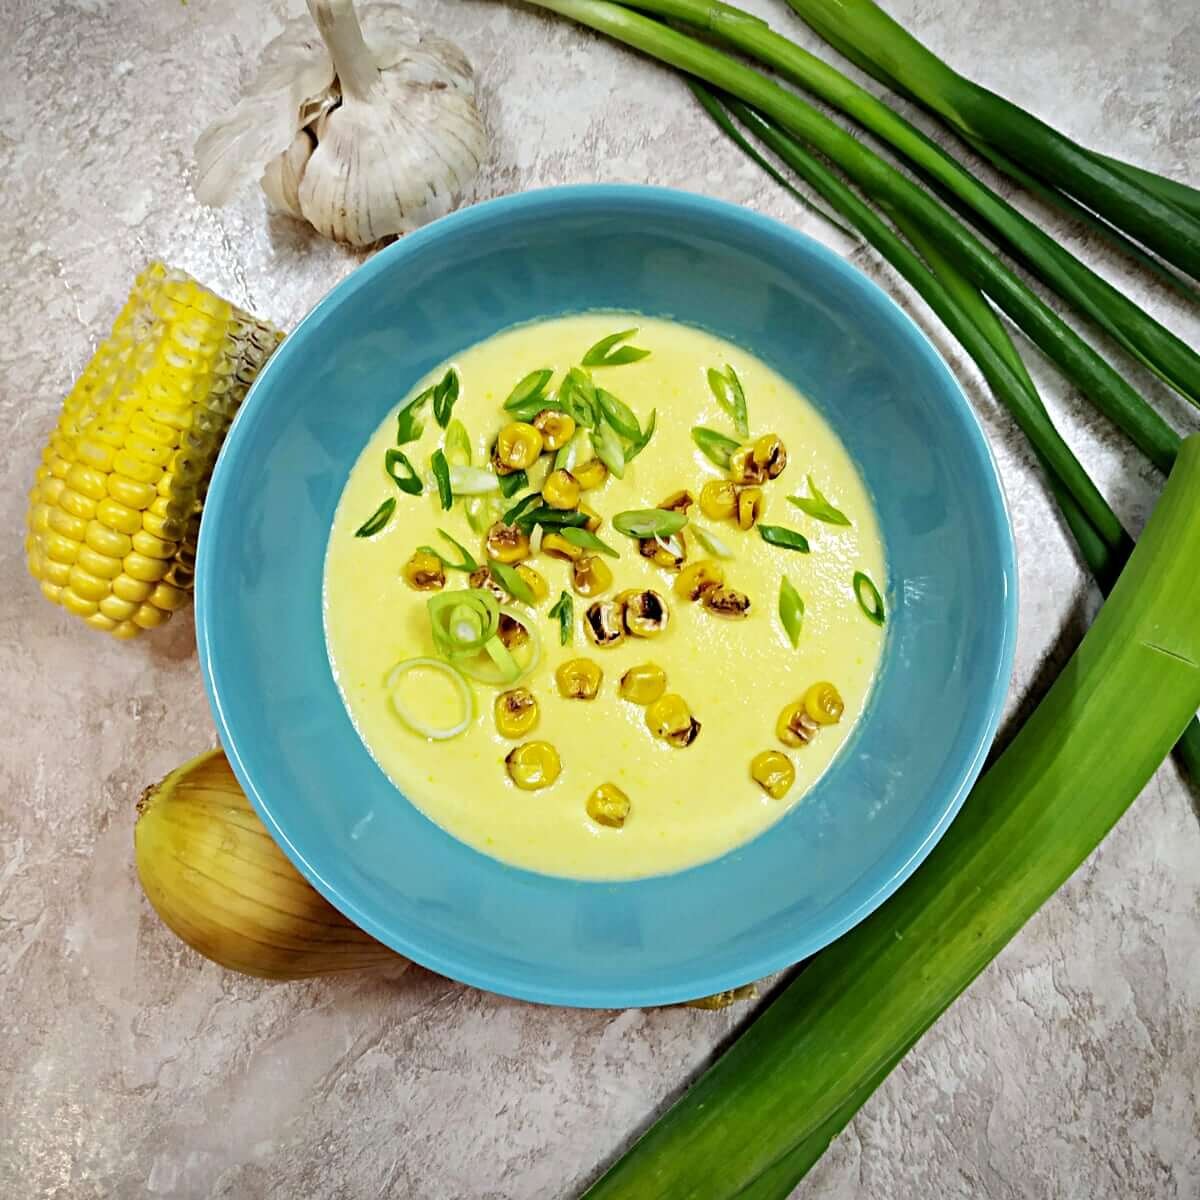 Суп из консервированной кукурузы